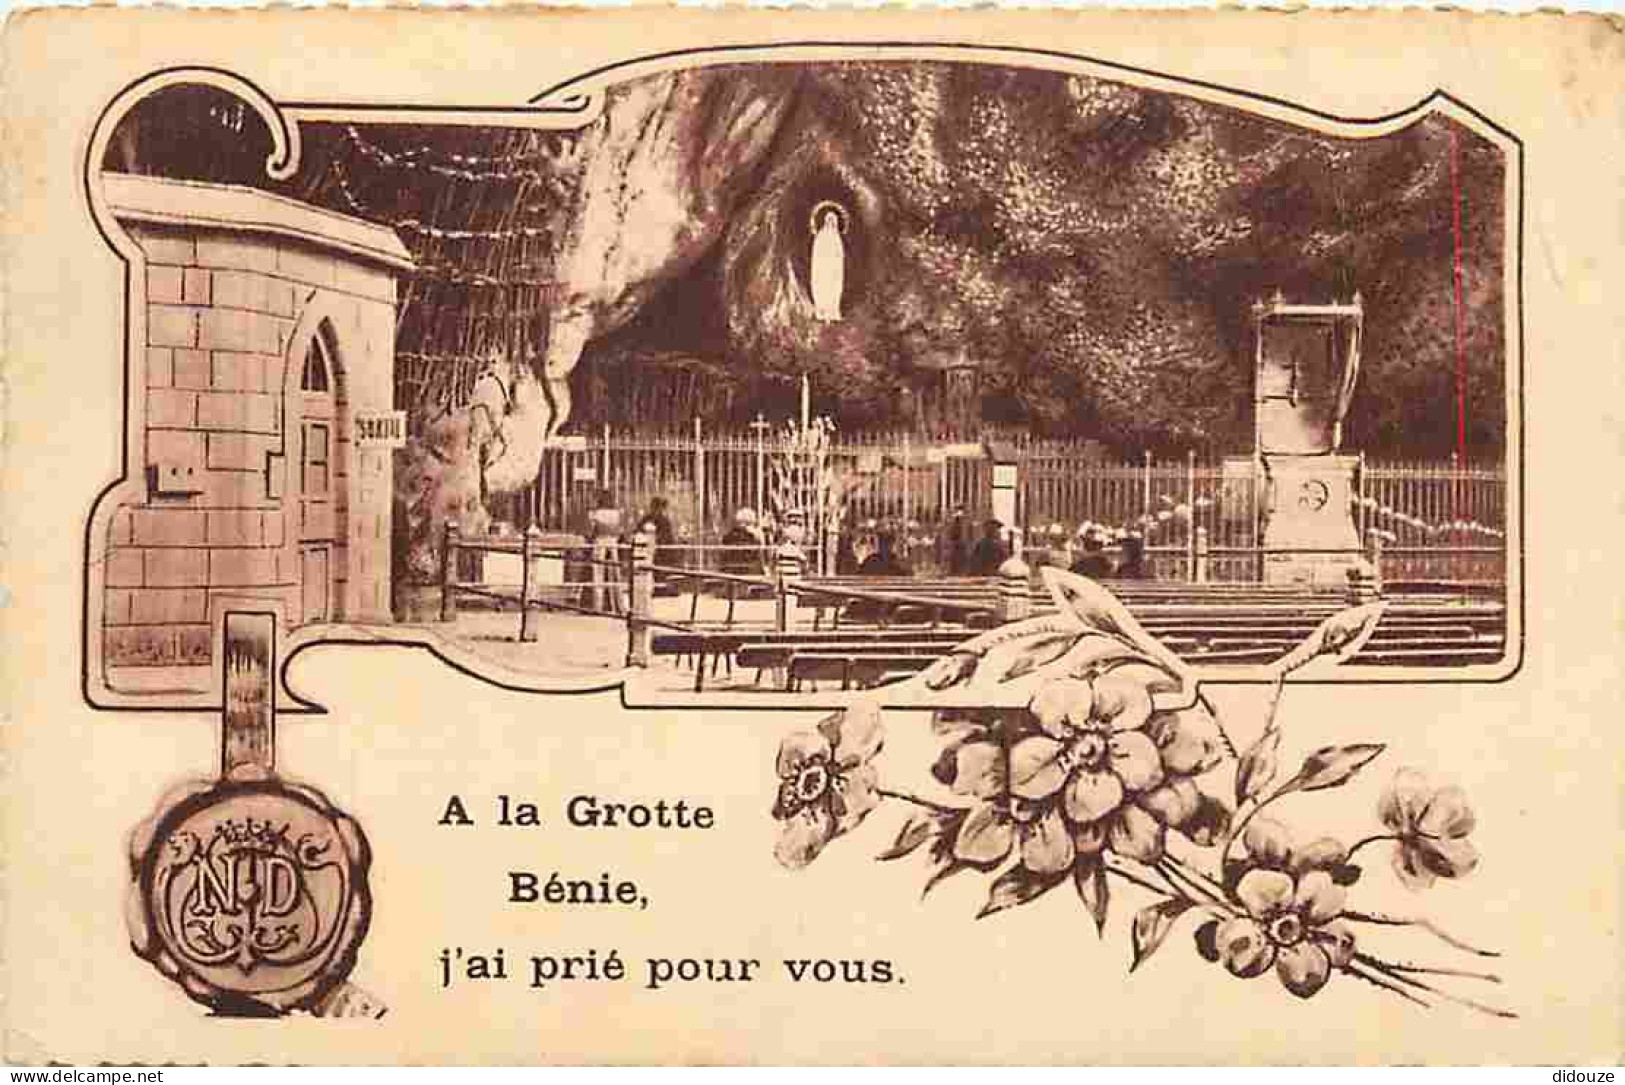 65 - Lourdes - Ville Connue Pour Son Pèlerinage Chrétien - CPA - Voir Scans Recto-Verso - Lourdes